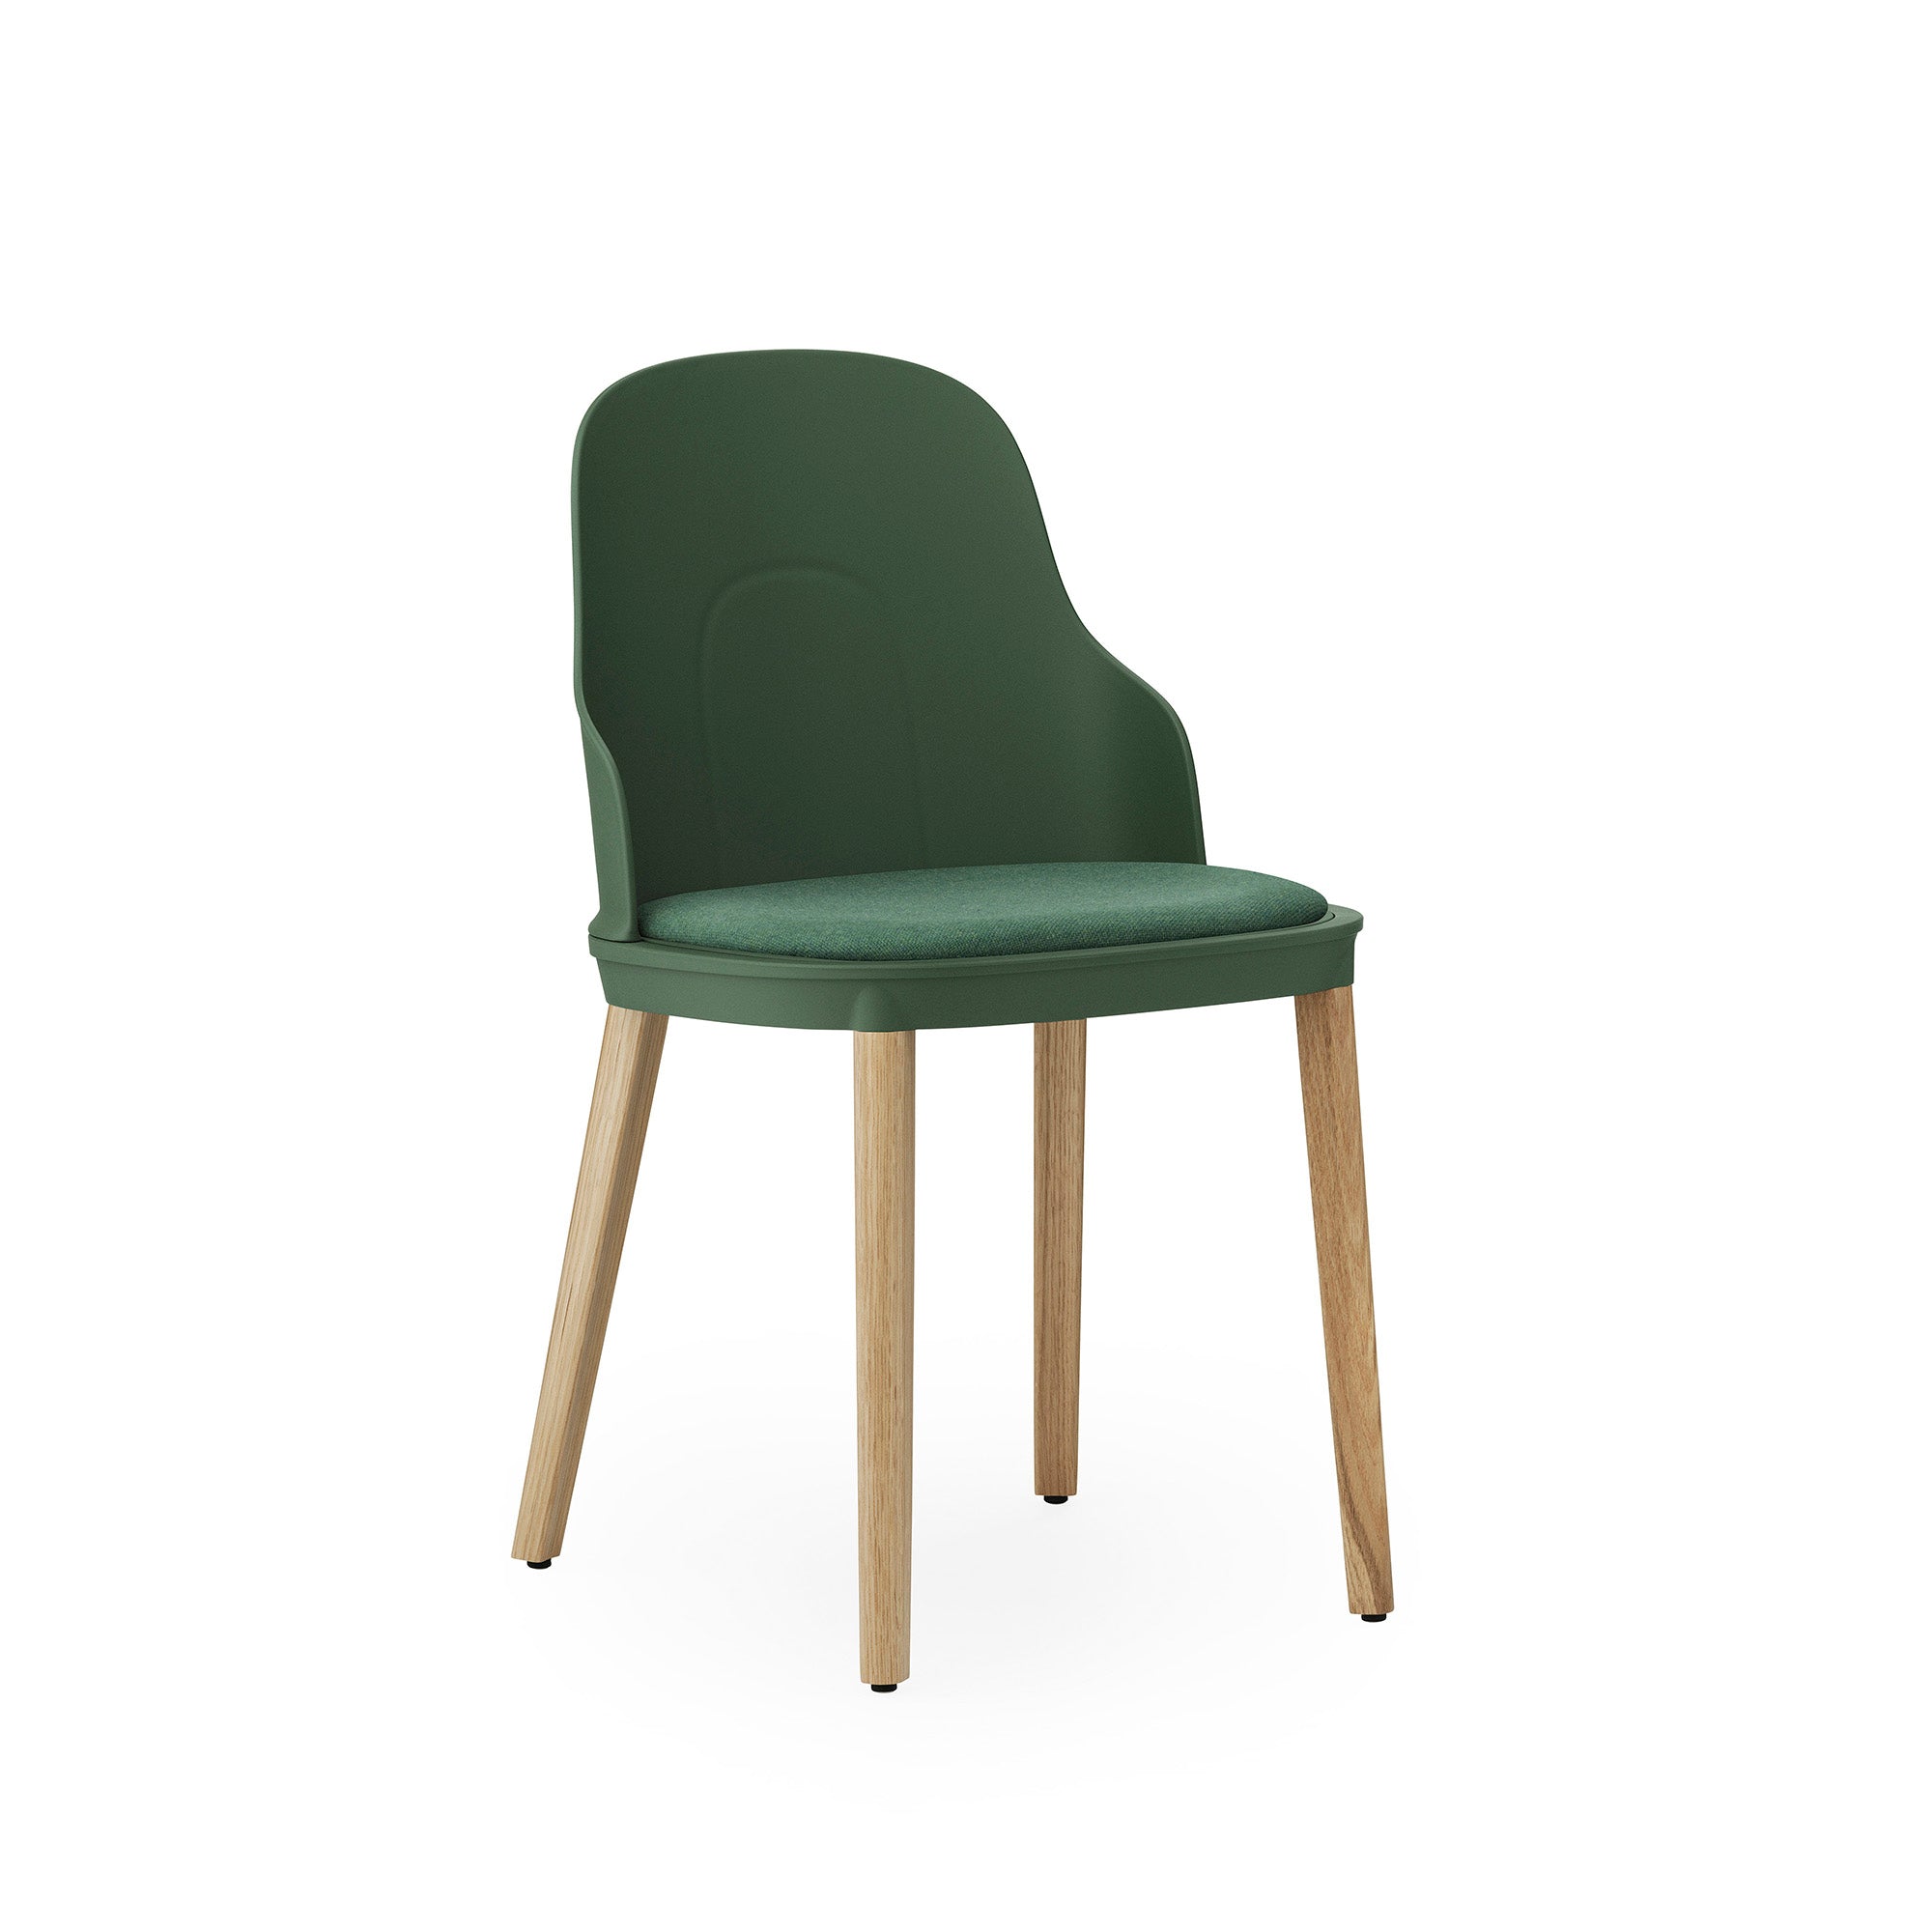 Allez Chair, scaun cu picioare din lemn și șezutul tapițat